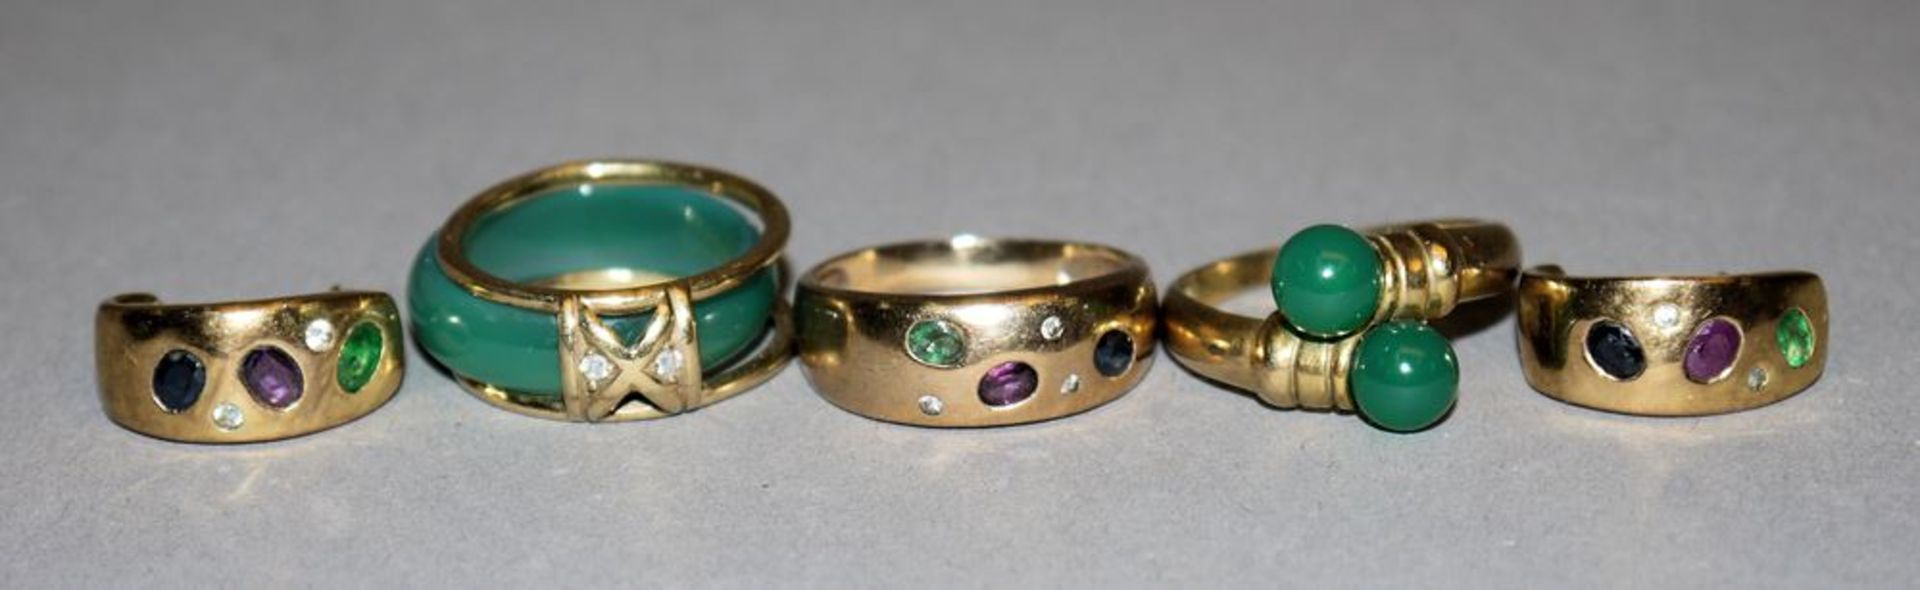 Schmuckset mit Farbsteinen und 2 Jade-Ringe, Gold